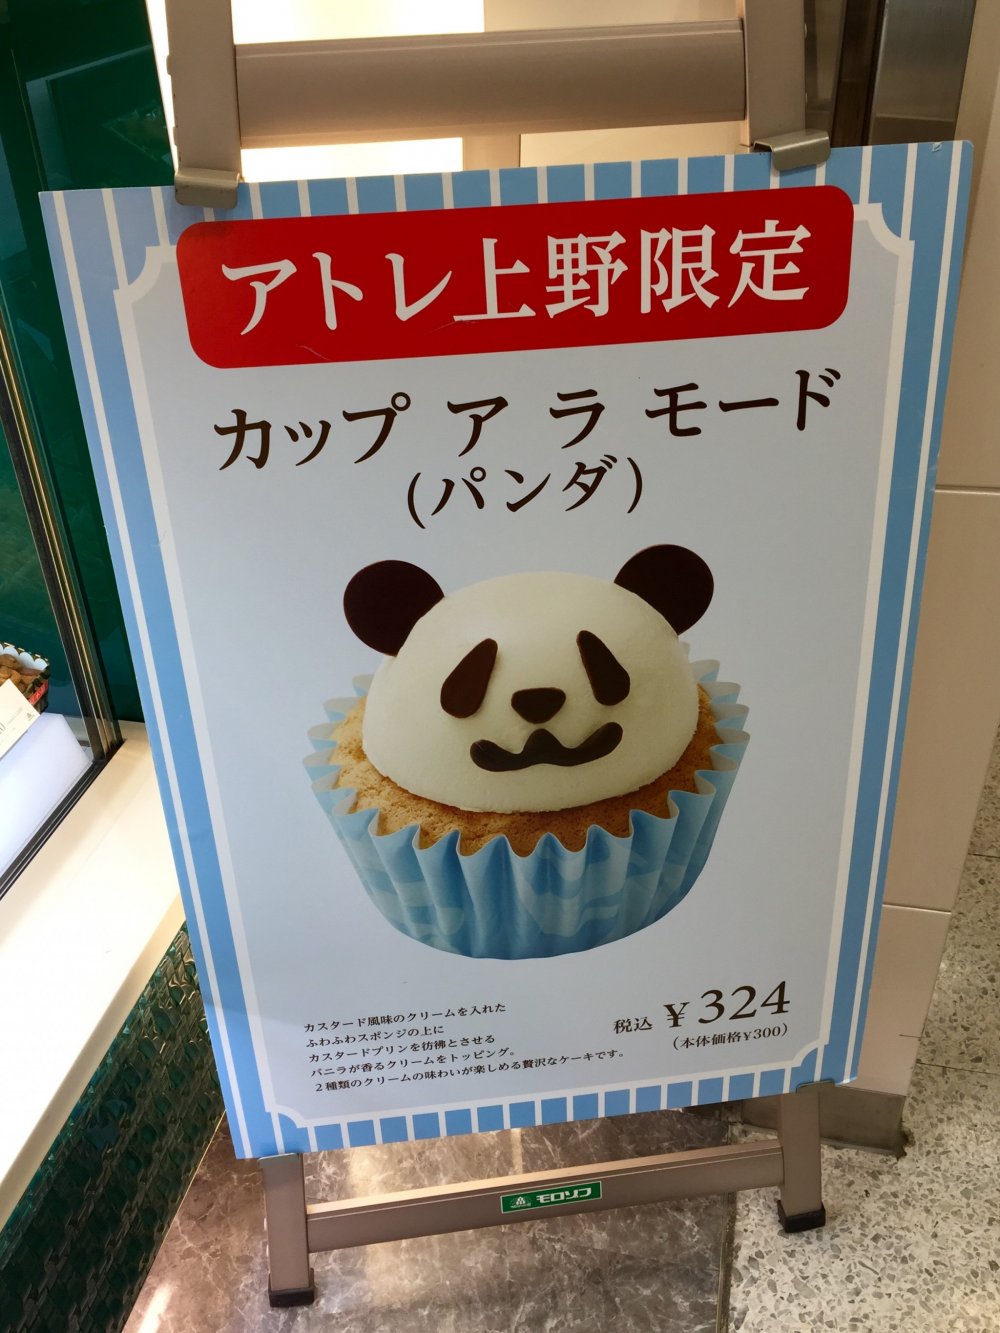 Такие капкейки с головой панды есть только в Atre Ueno, ведь рядом - зоопарк